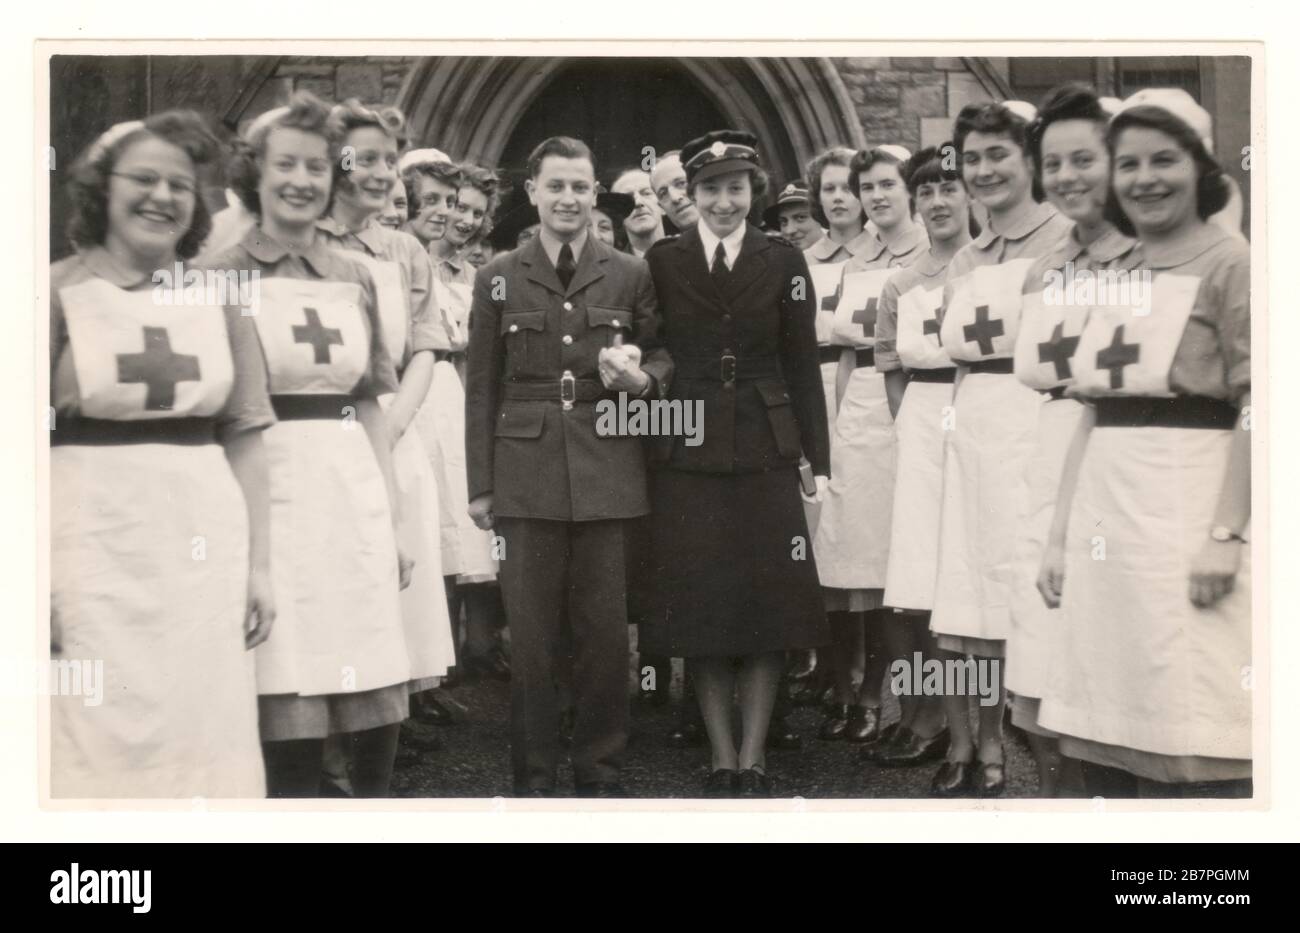 WK2 Ära Foto von glücklichen attraktiven britischen Roten Kreuz Militärkrankenschwester Offizier VAD in Dienstuniform trägt eine British Red Cross Society Cap Abzeichen, auf einer Mütze - Heirat an RAF-Flieger, Bristol, England, Großbritannien datiert Januar 1944 Stockfoto